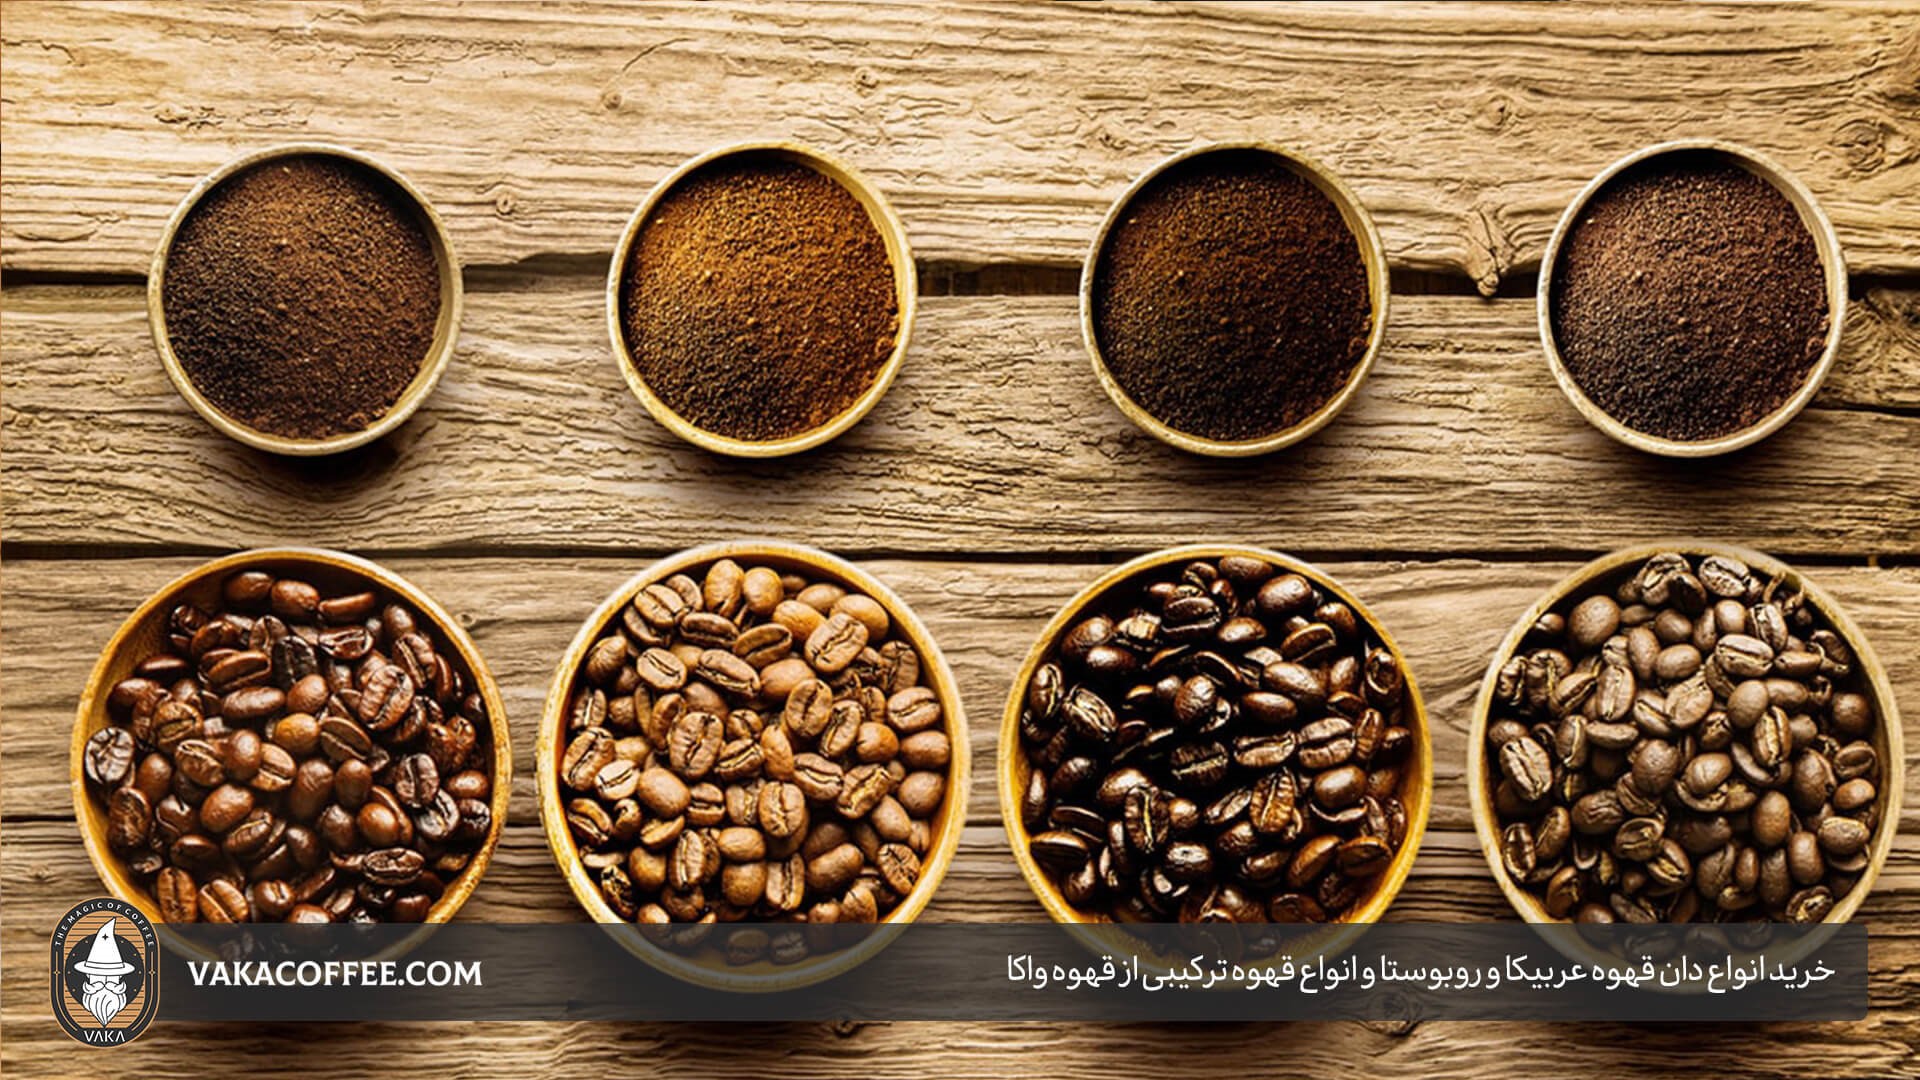 خرید انواه دان قهوه عربیکا و روبوستا و انواع قهوه ترکیبی از قهوه واکا